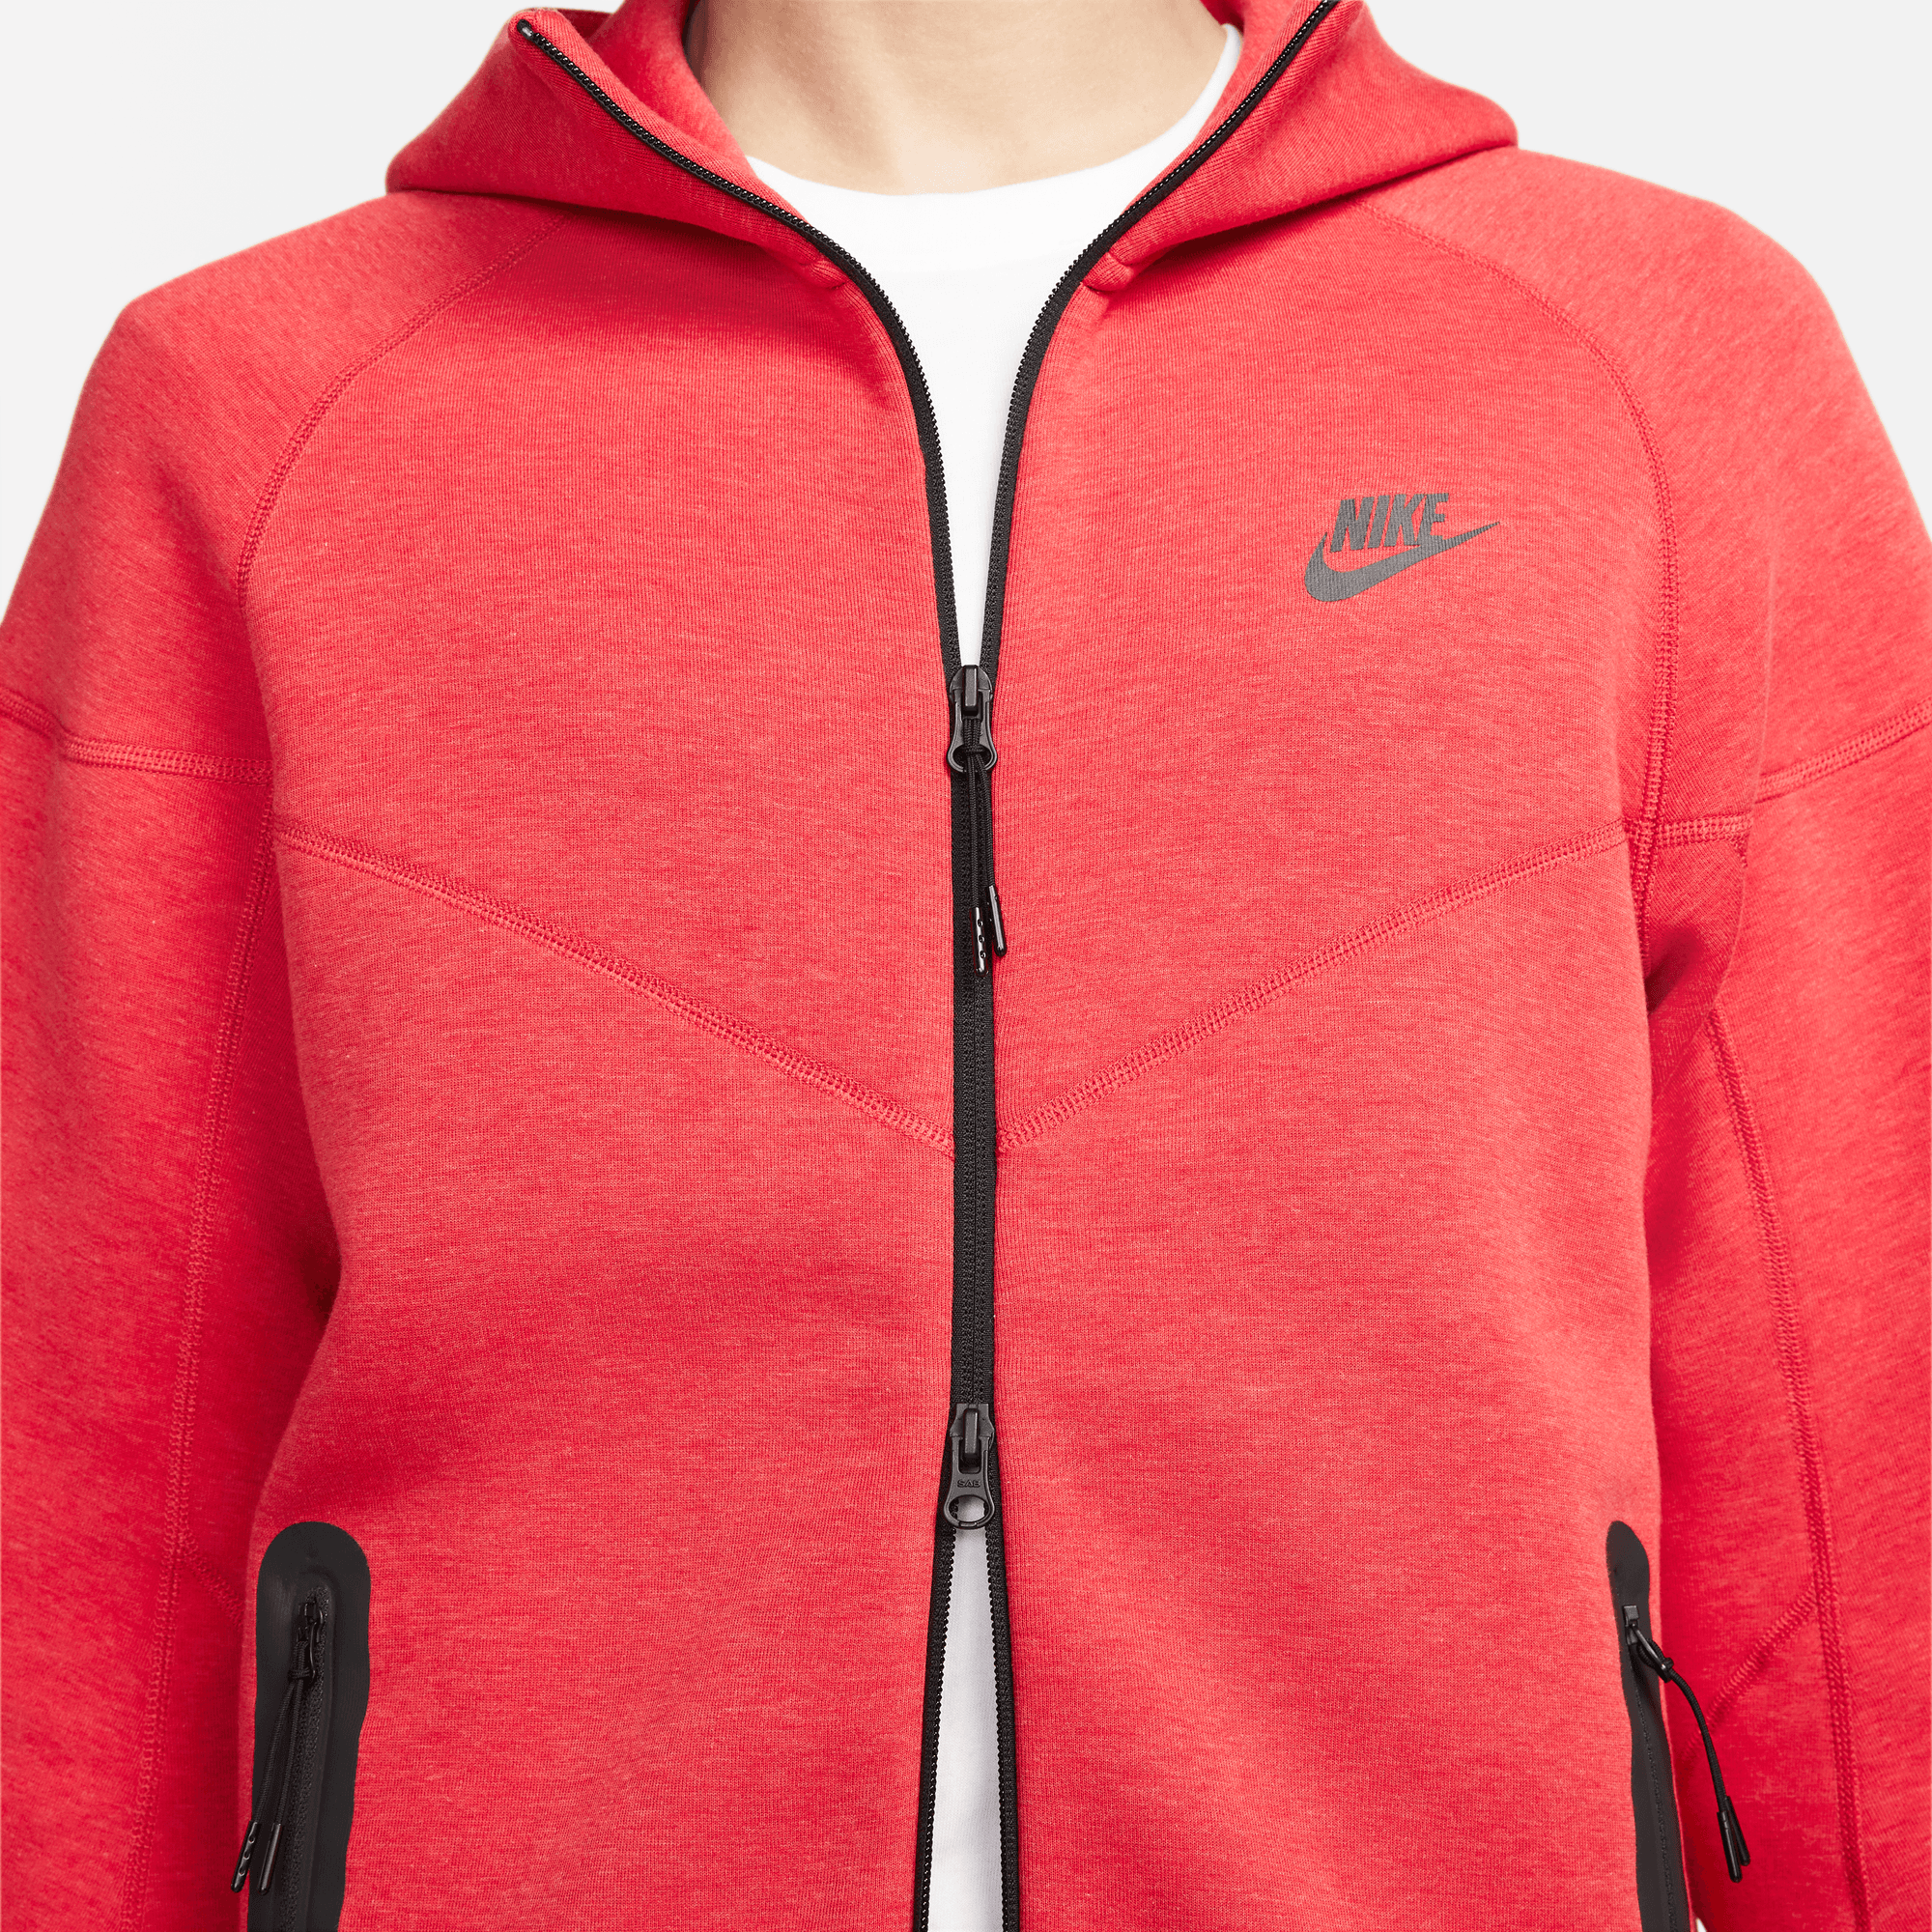 Nike Sportswear Tech Fleece Red Windrunner